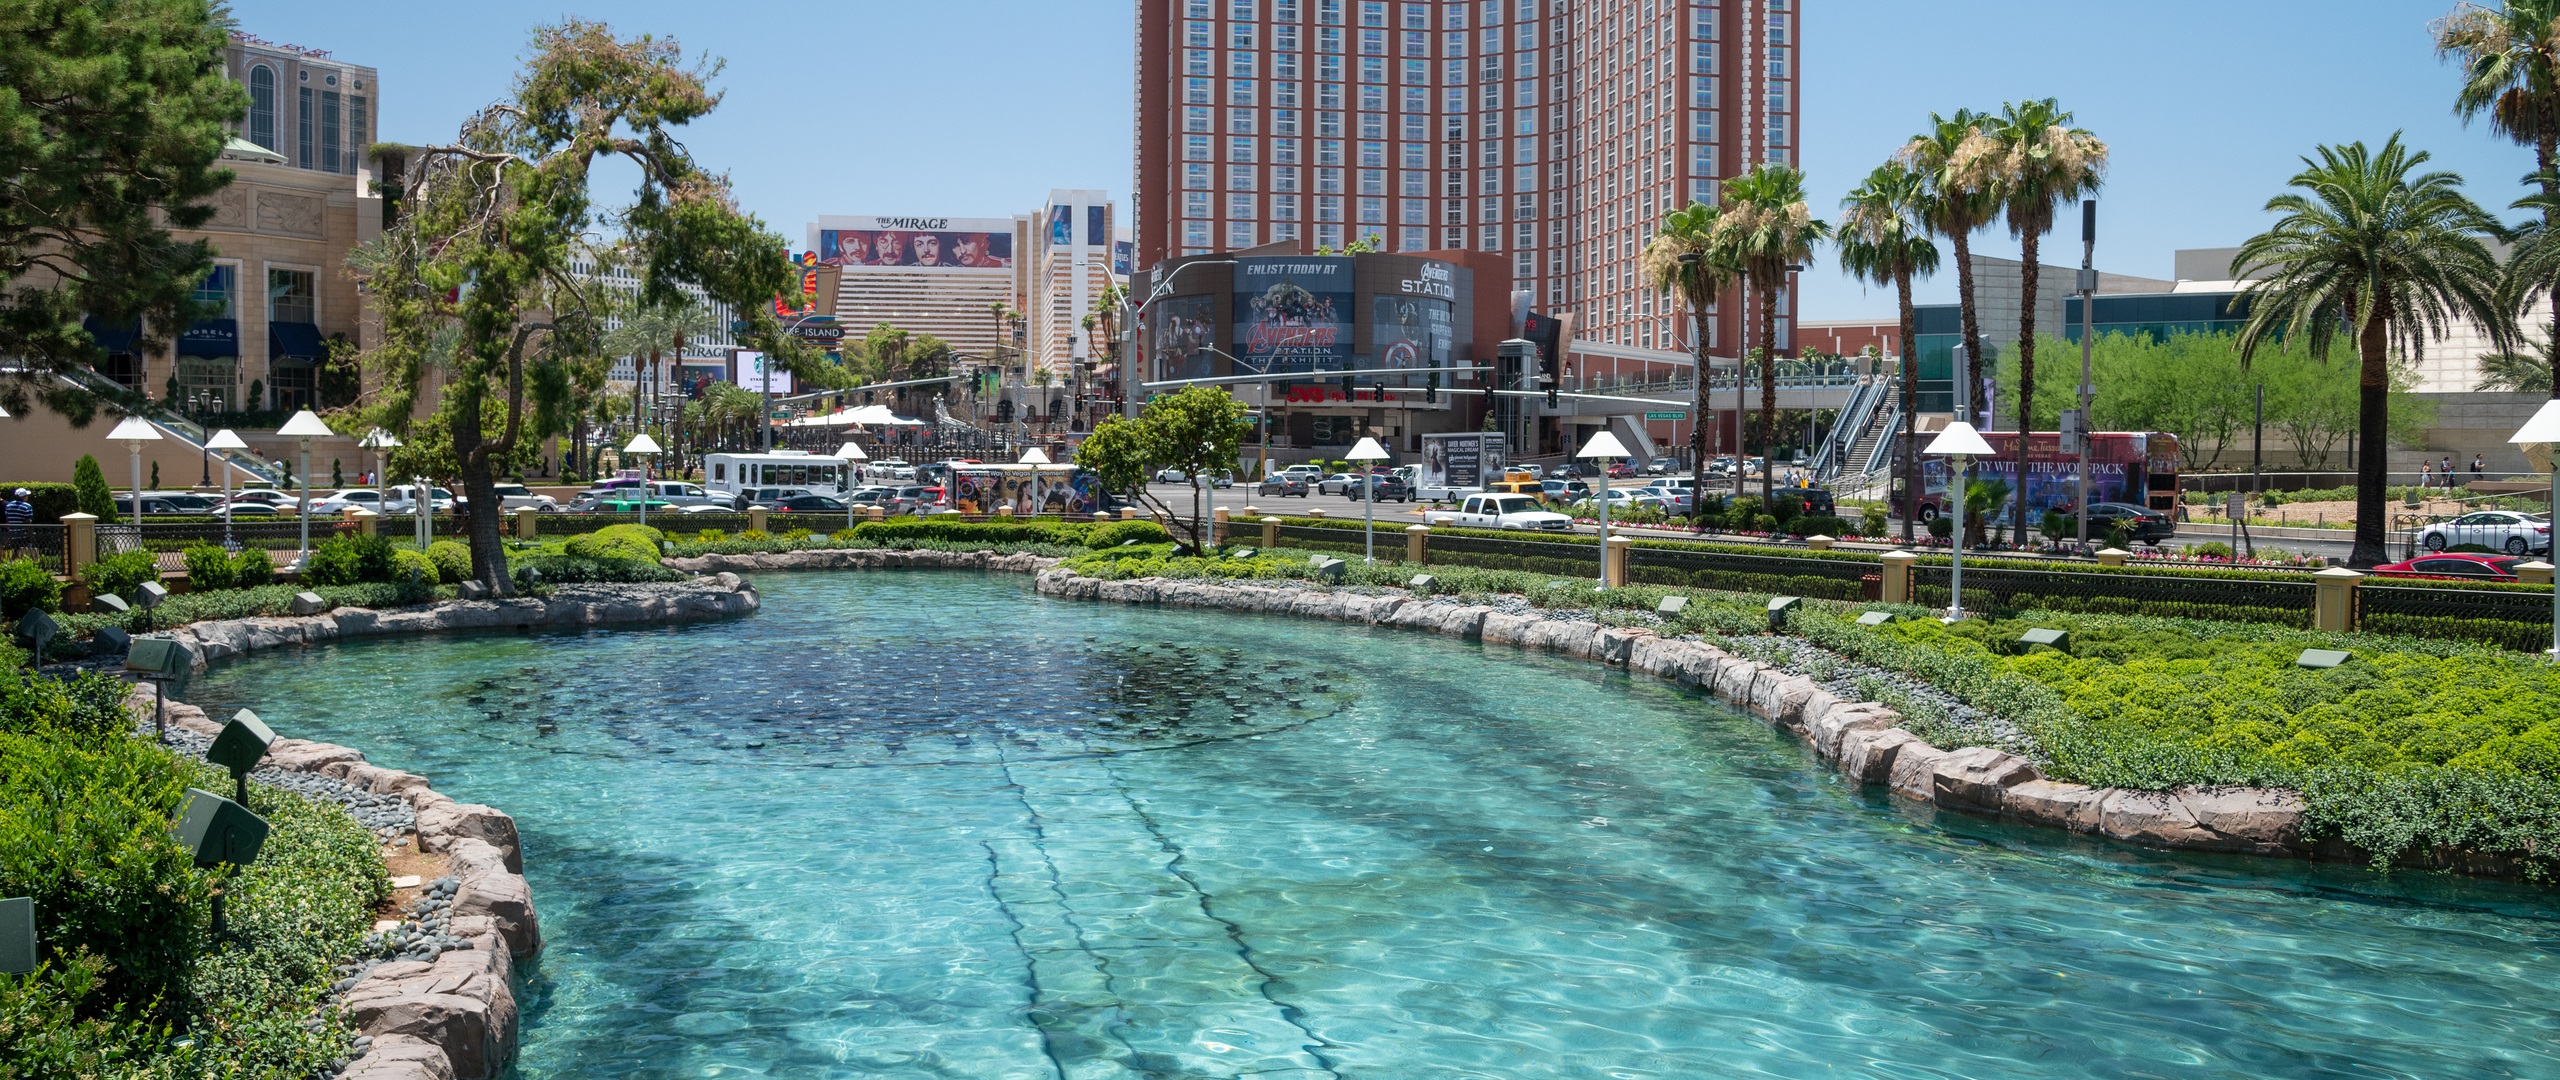 Best Hotel Pools In Las Vegas